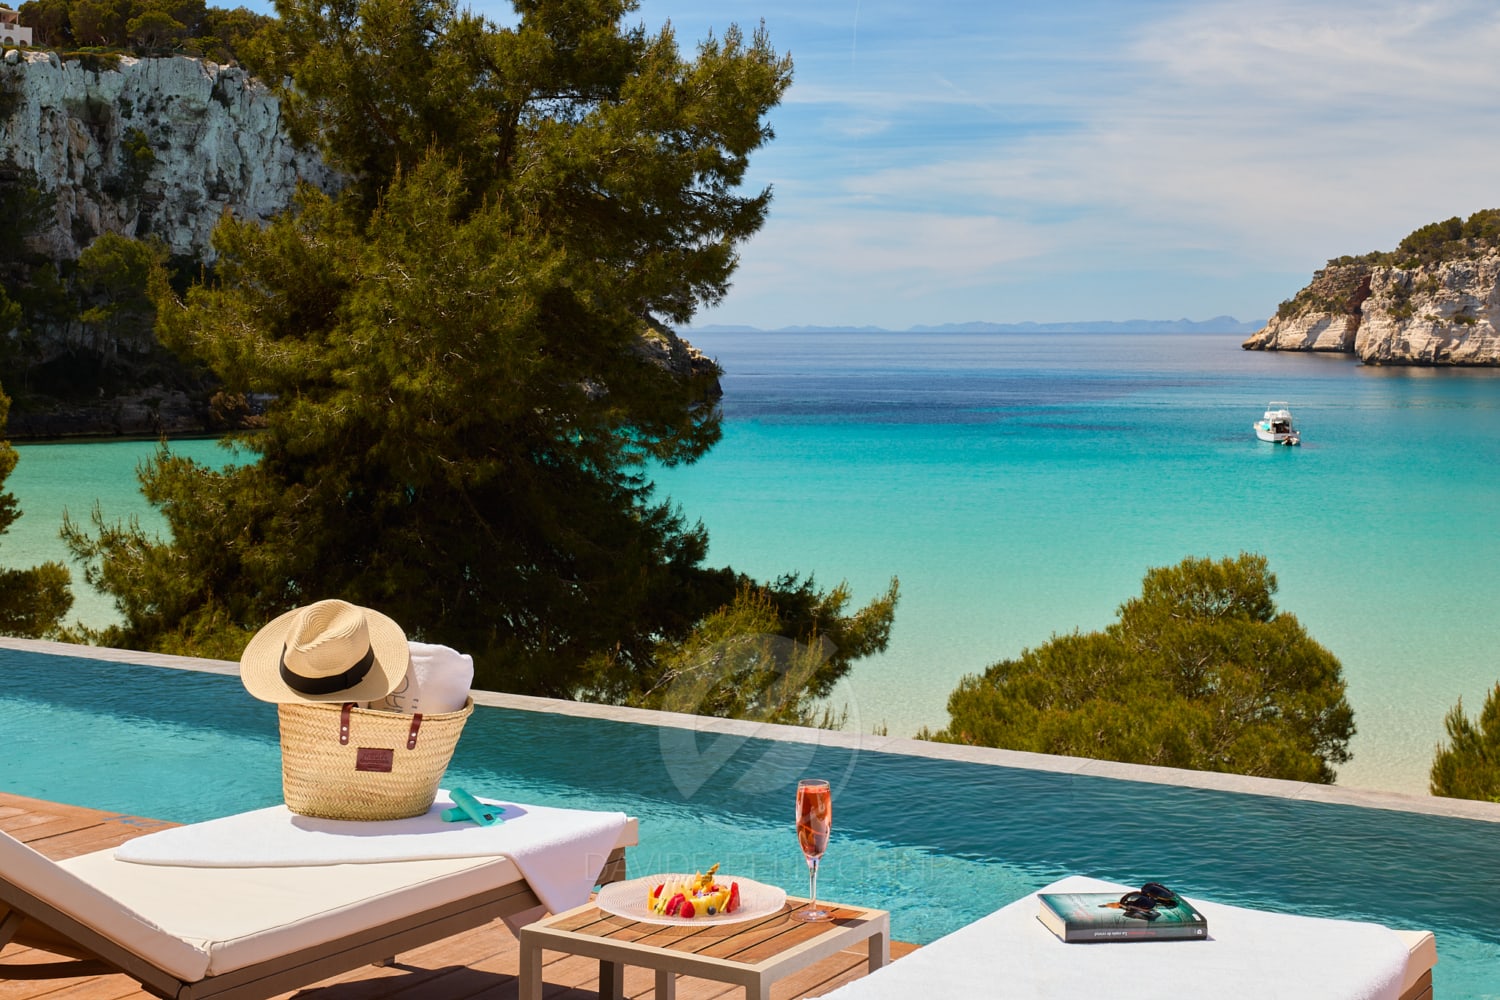 Una mujer sentada en un sillón junto a una piscina, disfrutando de la hermosa vista del océano en Menorca, capturada por un experto fotógrafo de hotel.